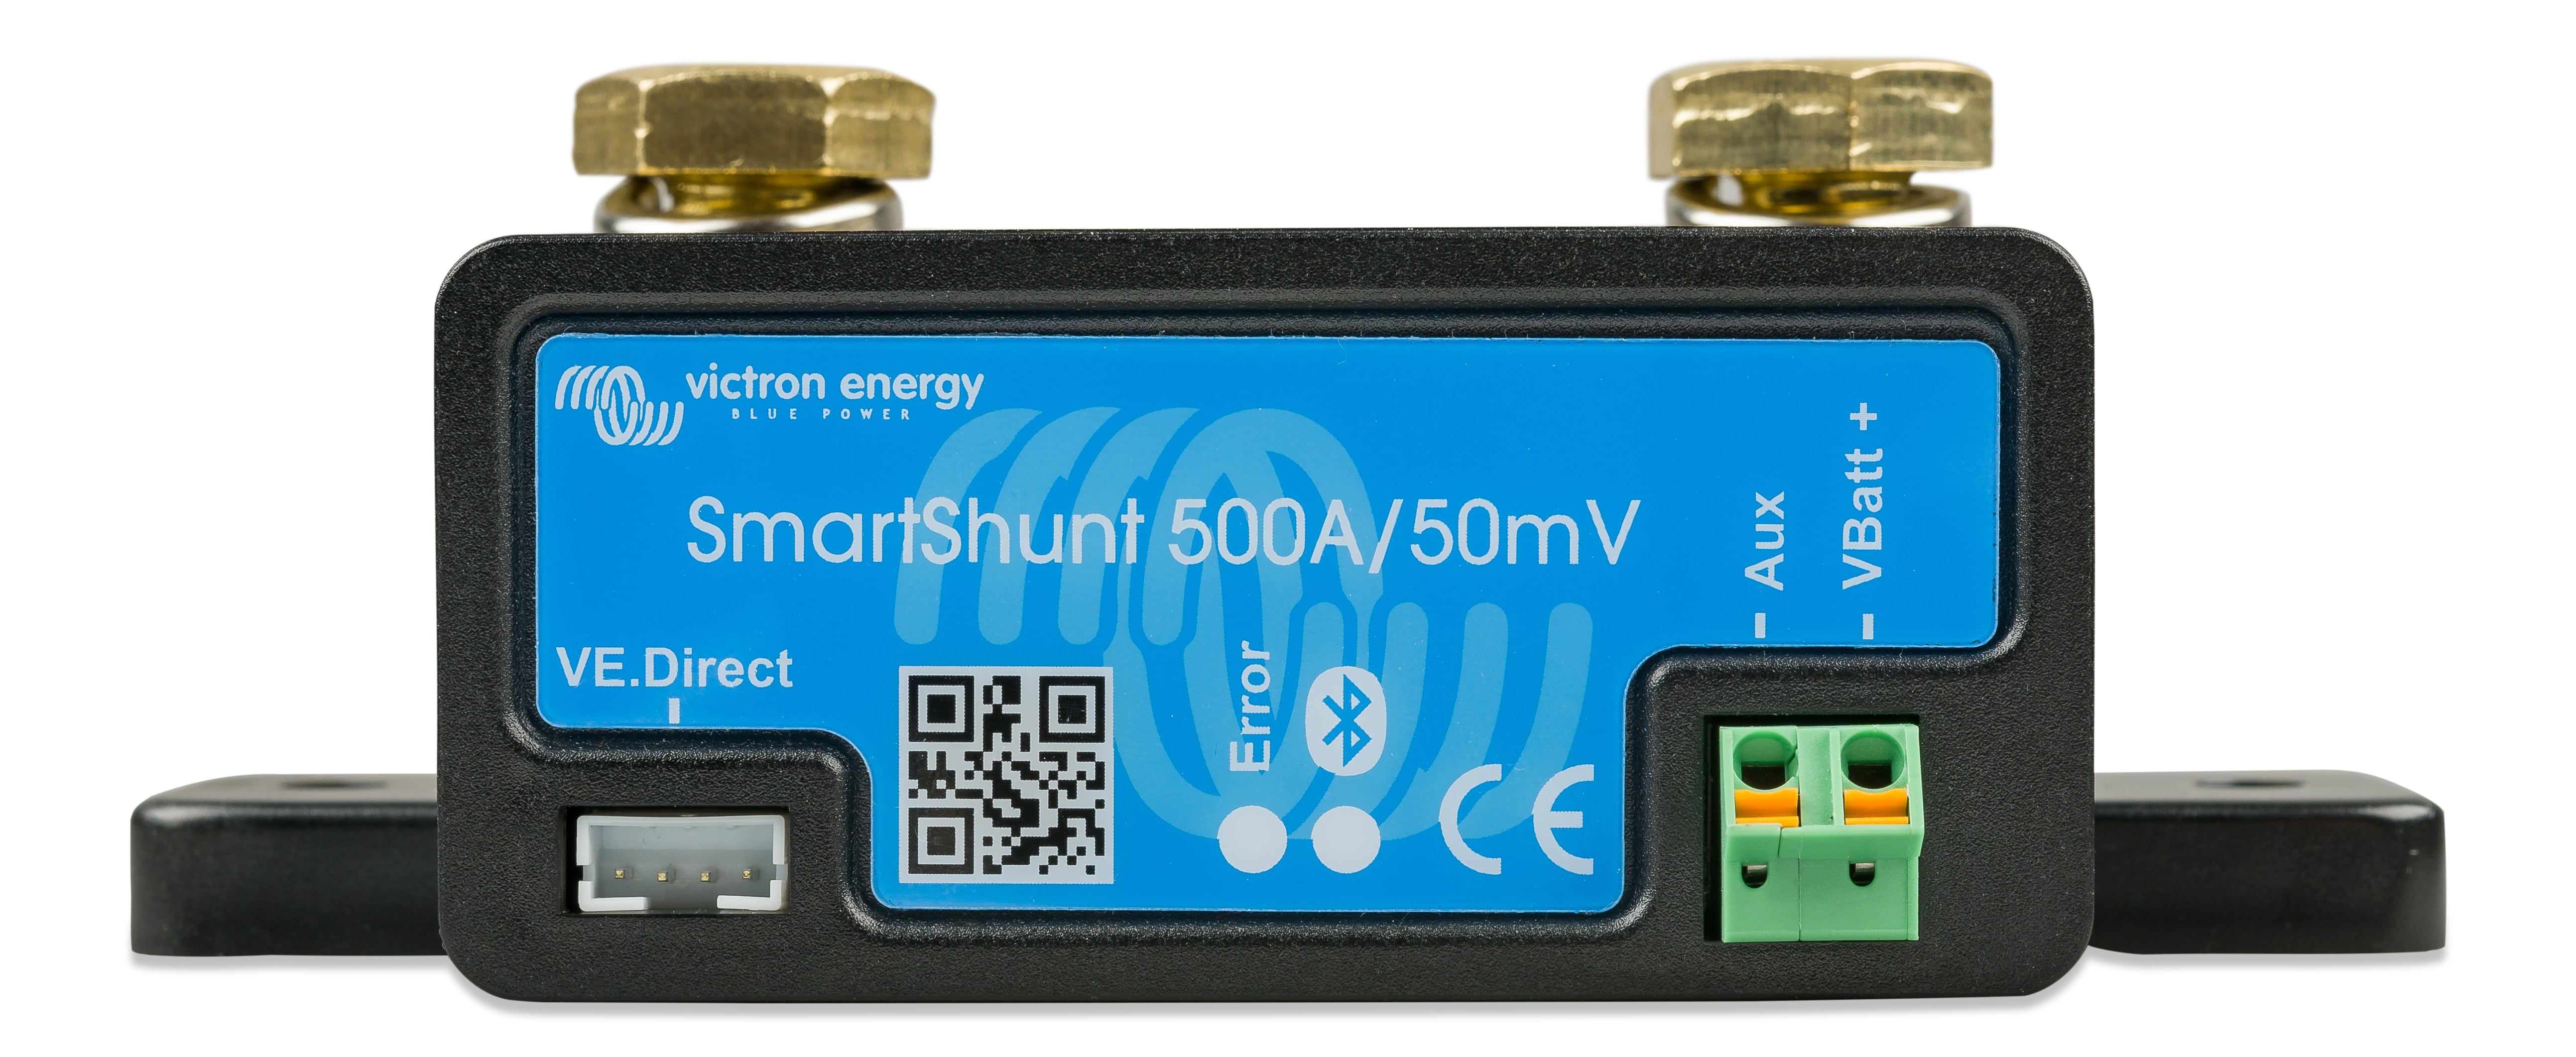 Smartshunt 500A/50mV IP65